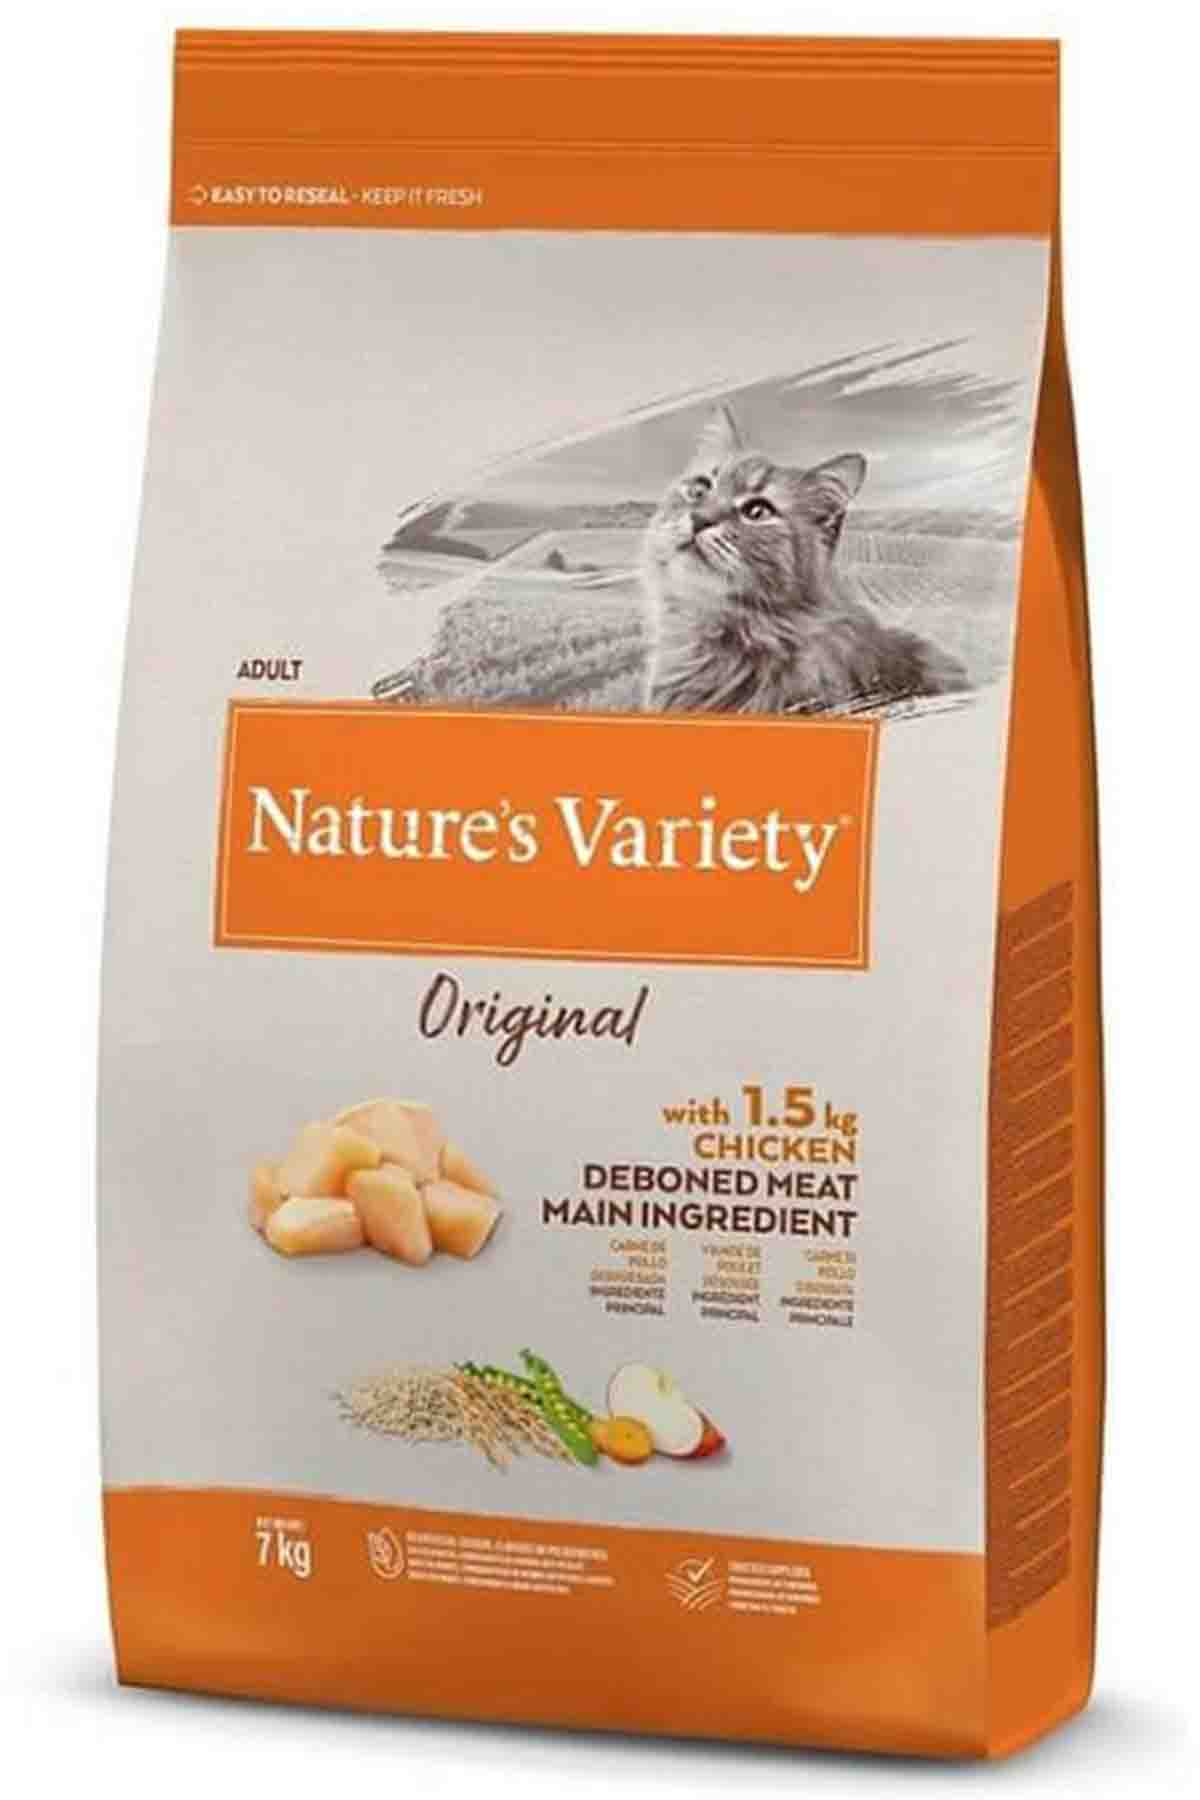 Natures Variety Original Tavuklu Yetişkin Kedi Maması 7kg